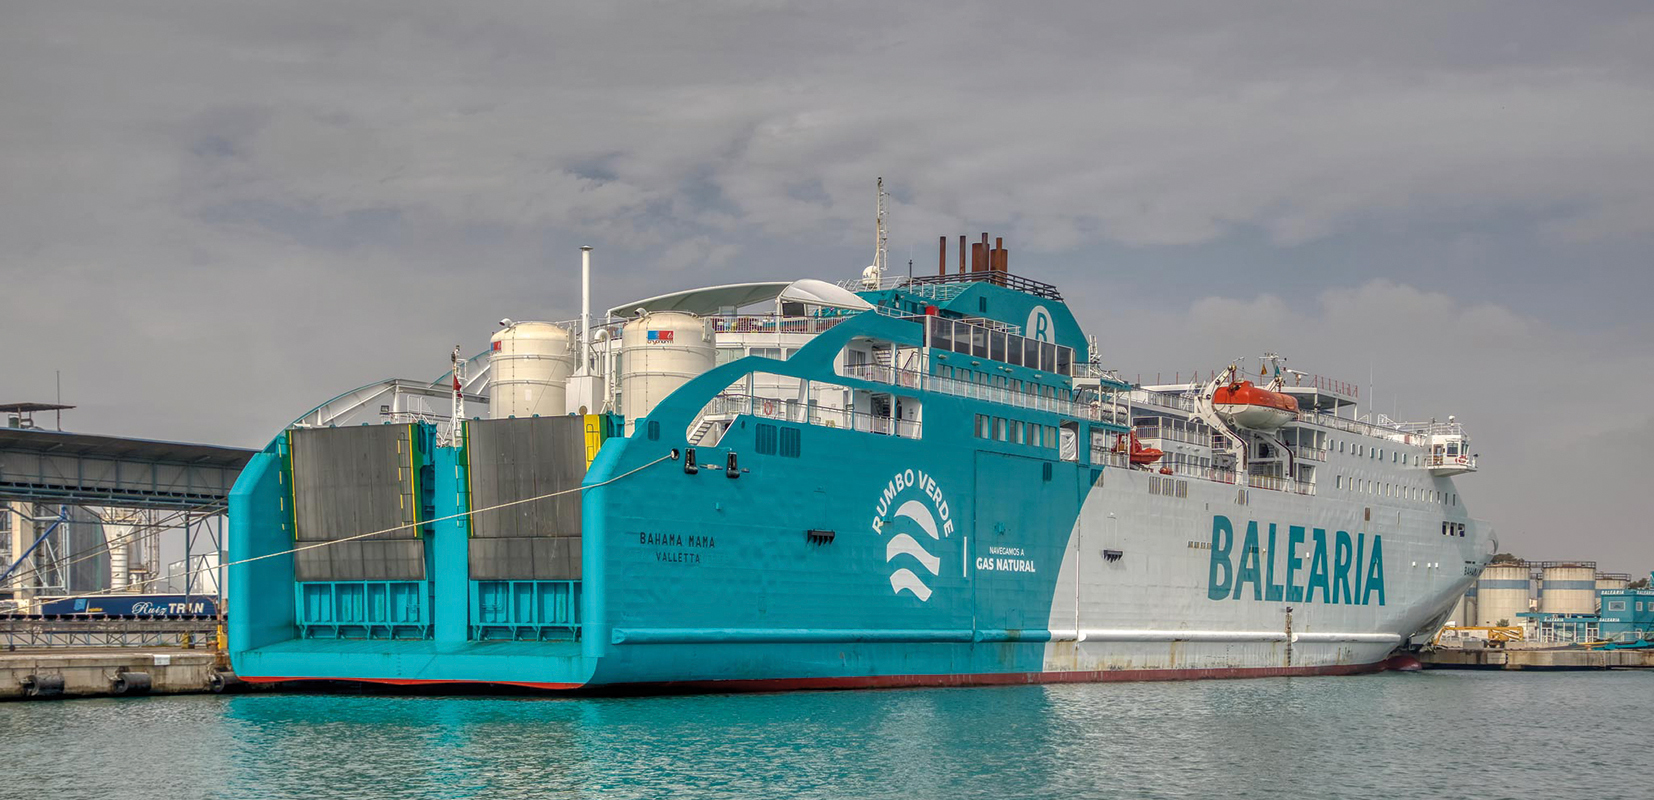 Balearia en España apuesta por buques duales propulsados por LNG y Gasoil Marino / Autor: Harbourpilot